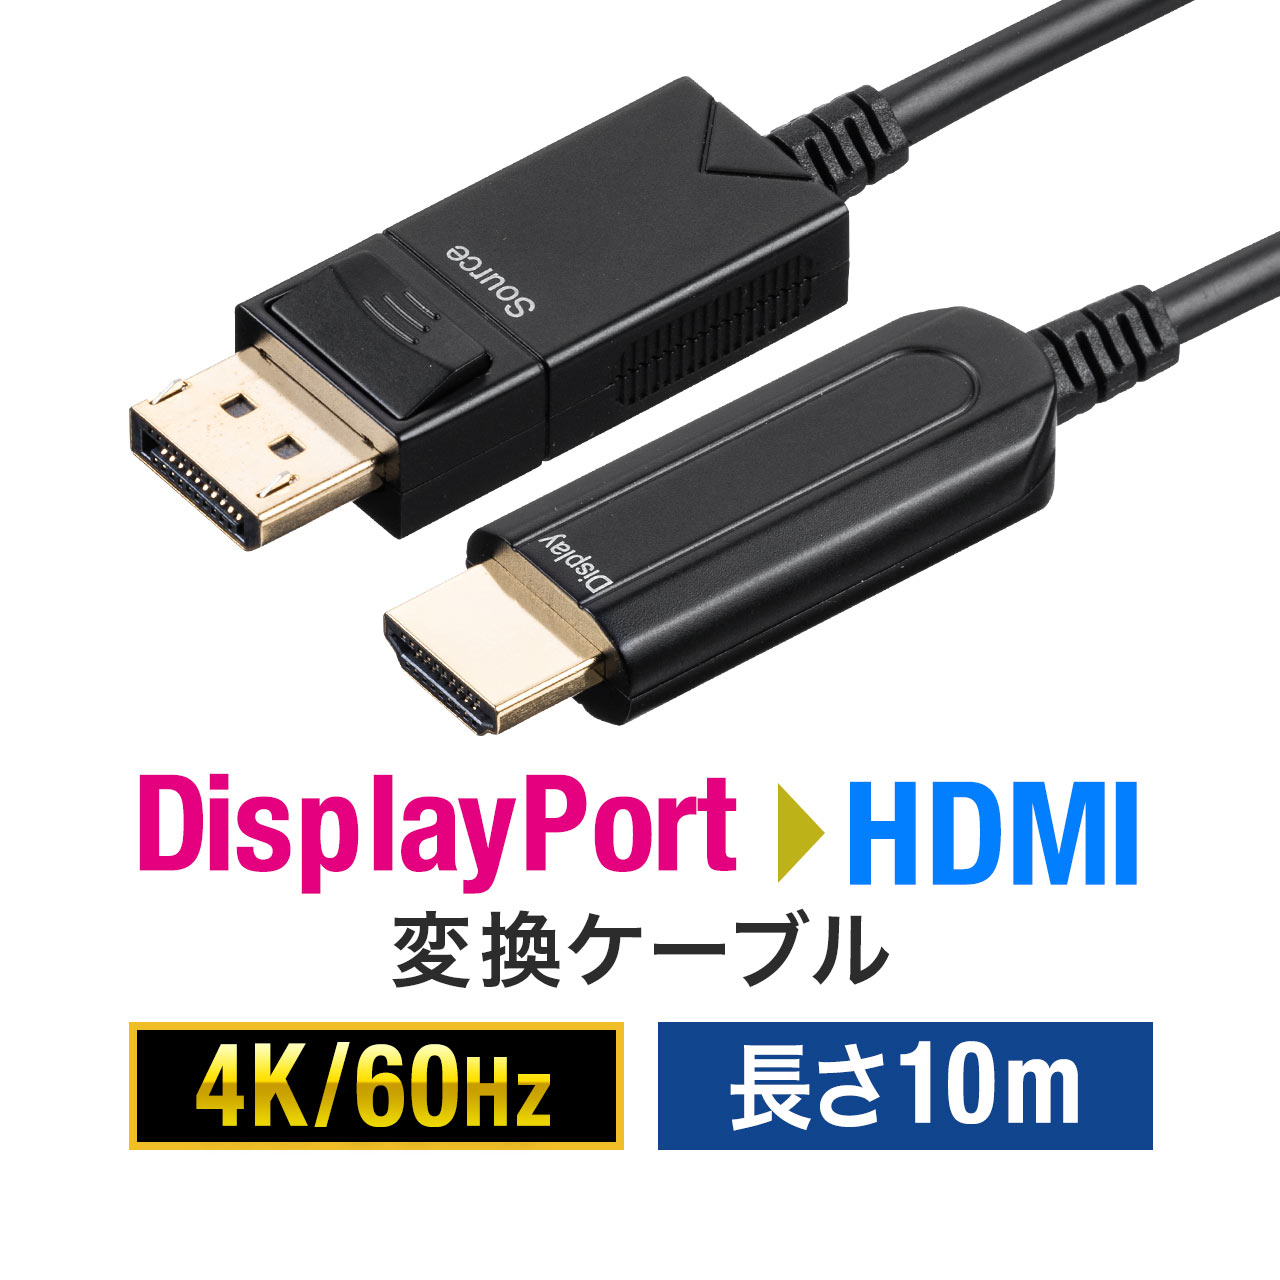 サンワサプライ DisplayPort-HDMI変換 光ファイバーケーブル(30m) KC-DPHDFB300 15倍P - 3